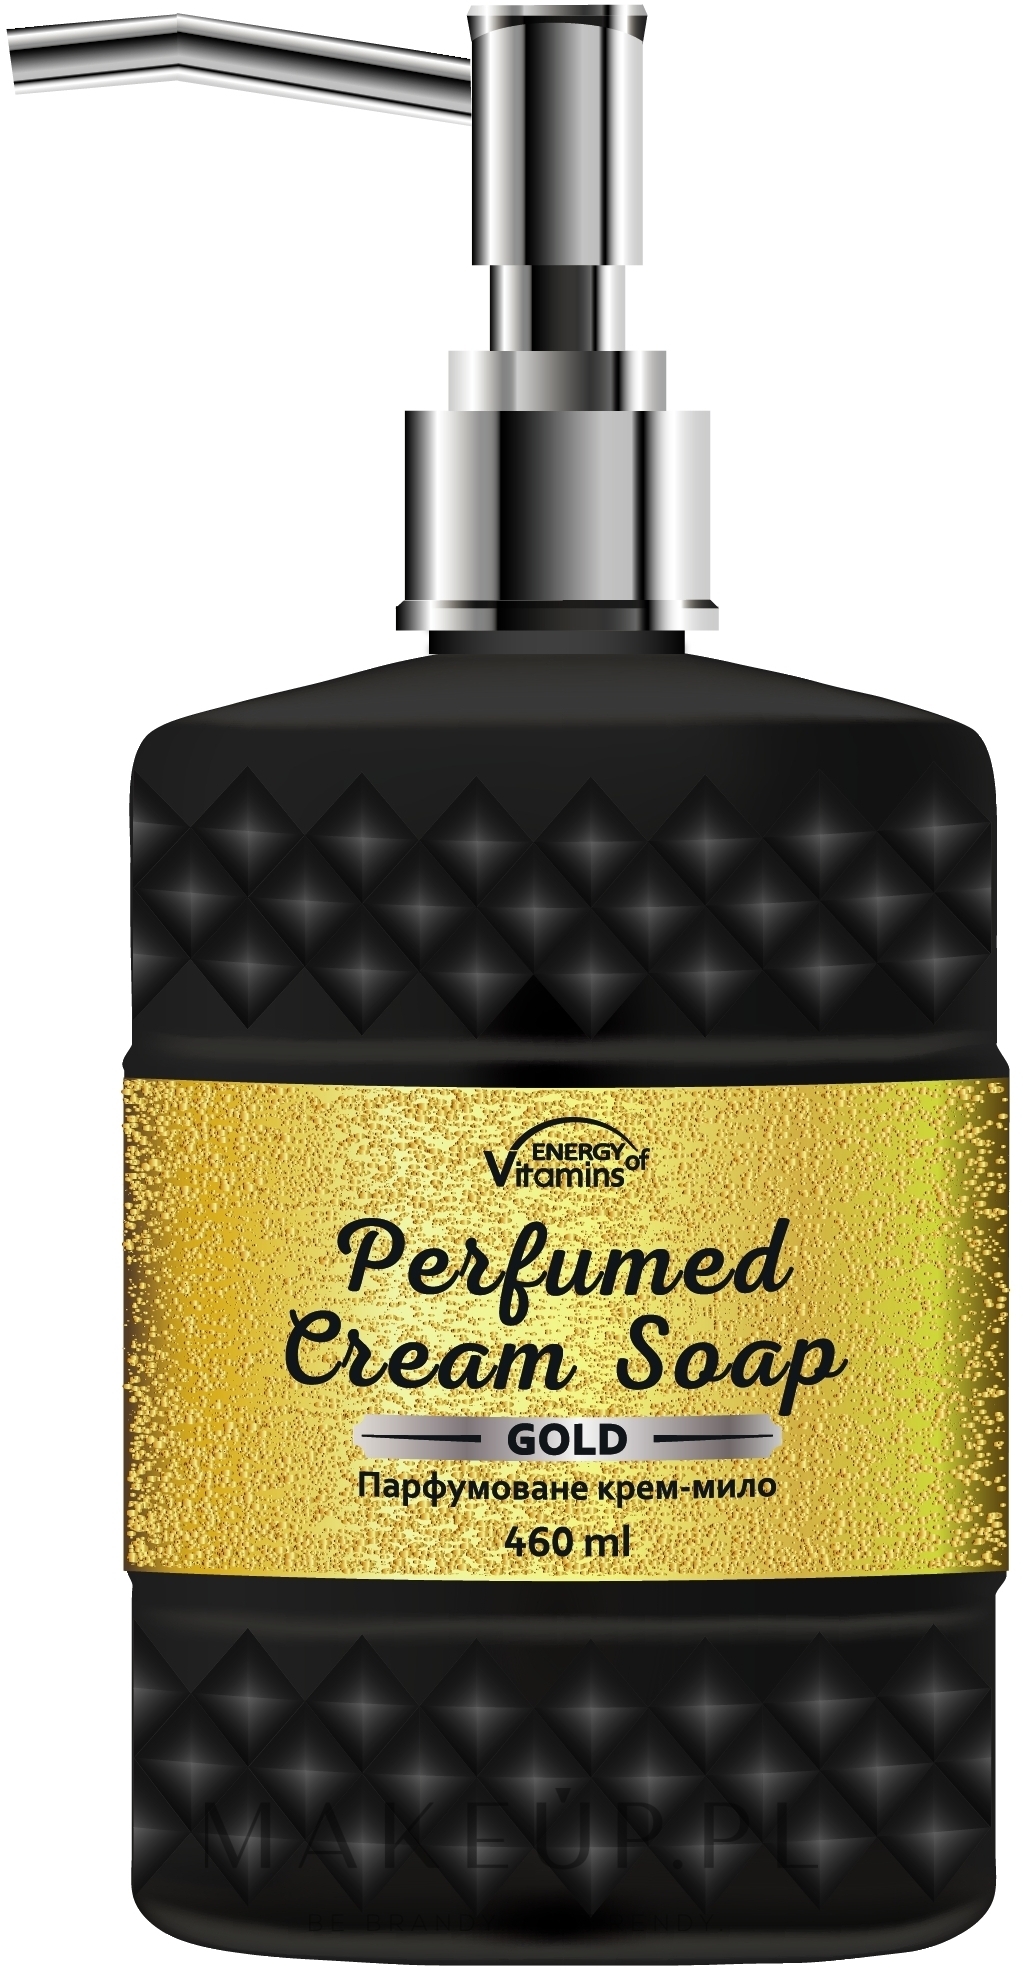 Perfumowane kremowe mydło do ciała Gold - Energy of Vitamins Perfumed Cream Soap — Zdjęcie 460 ml